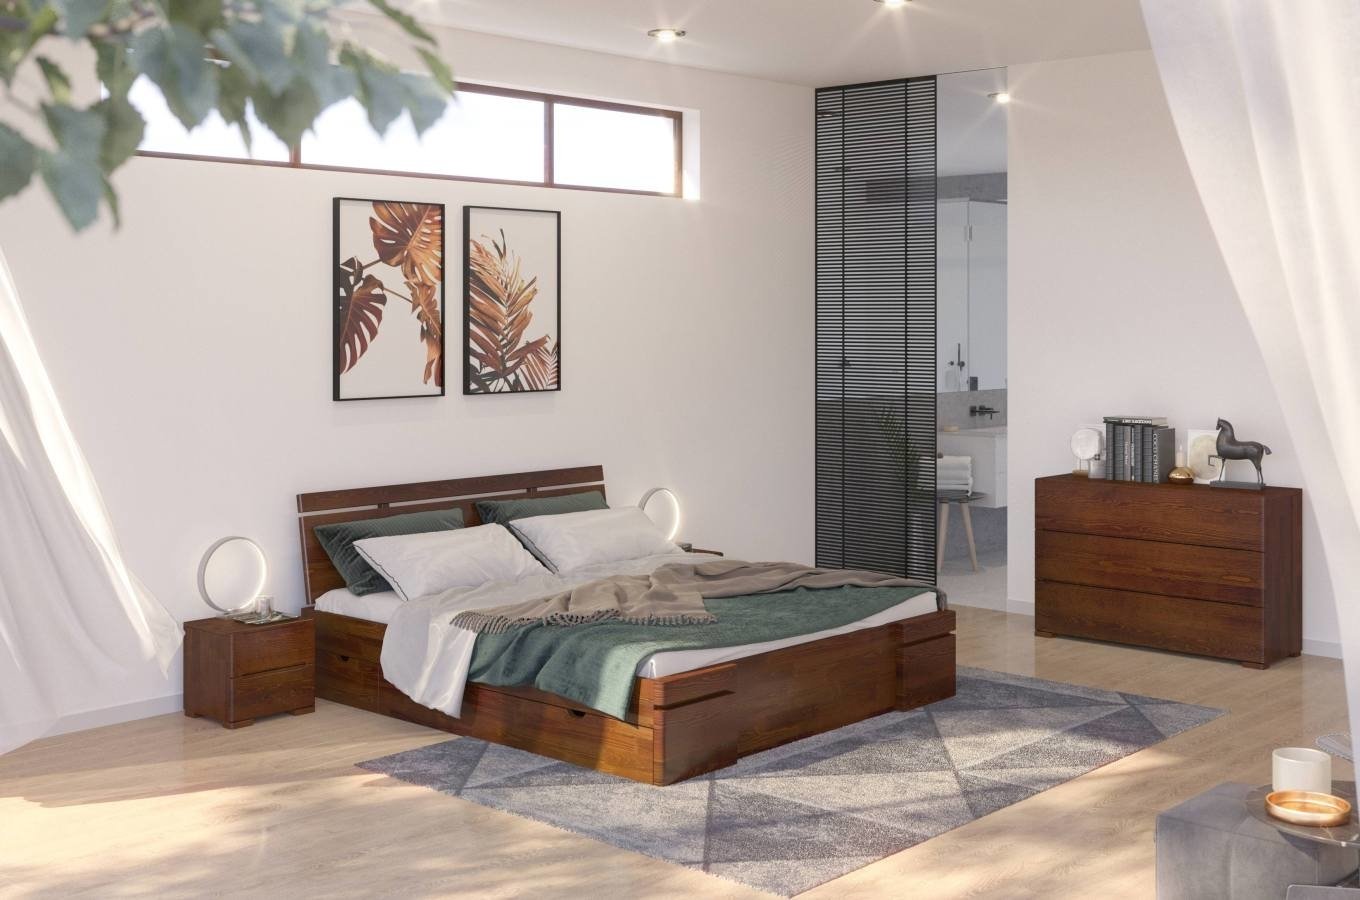 Łóżko drewniane sosnowe z szufladami Skandica SPARTA Maxi & DR